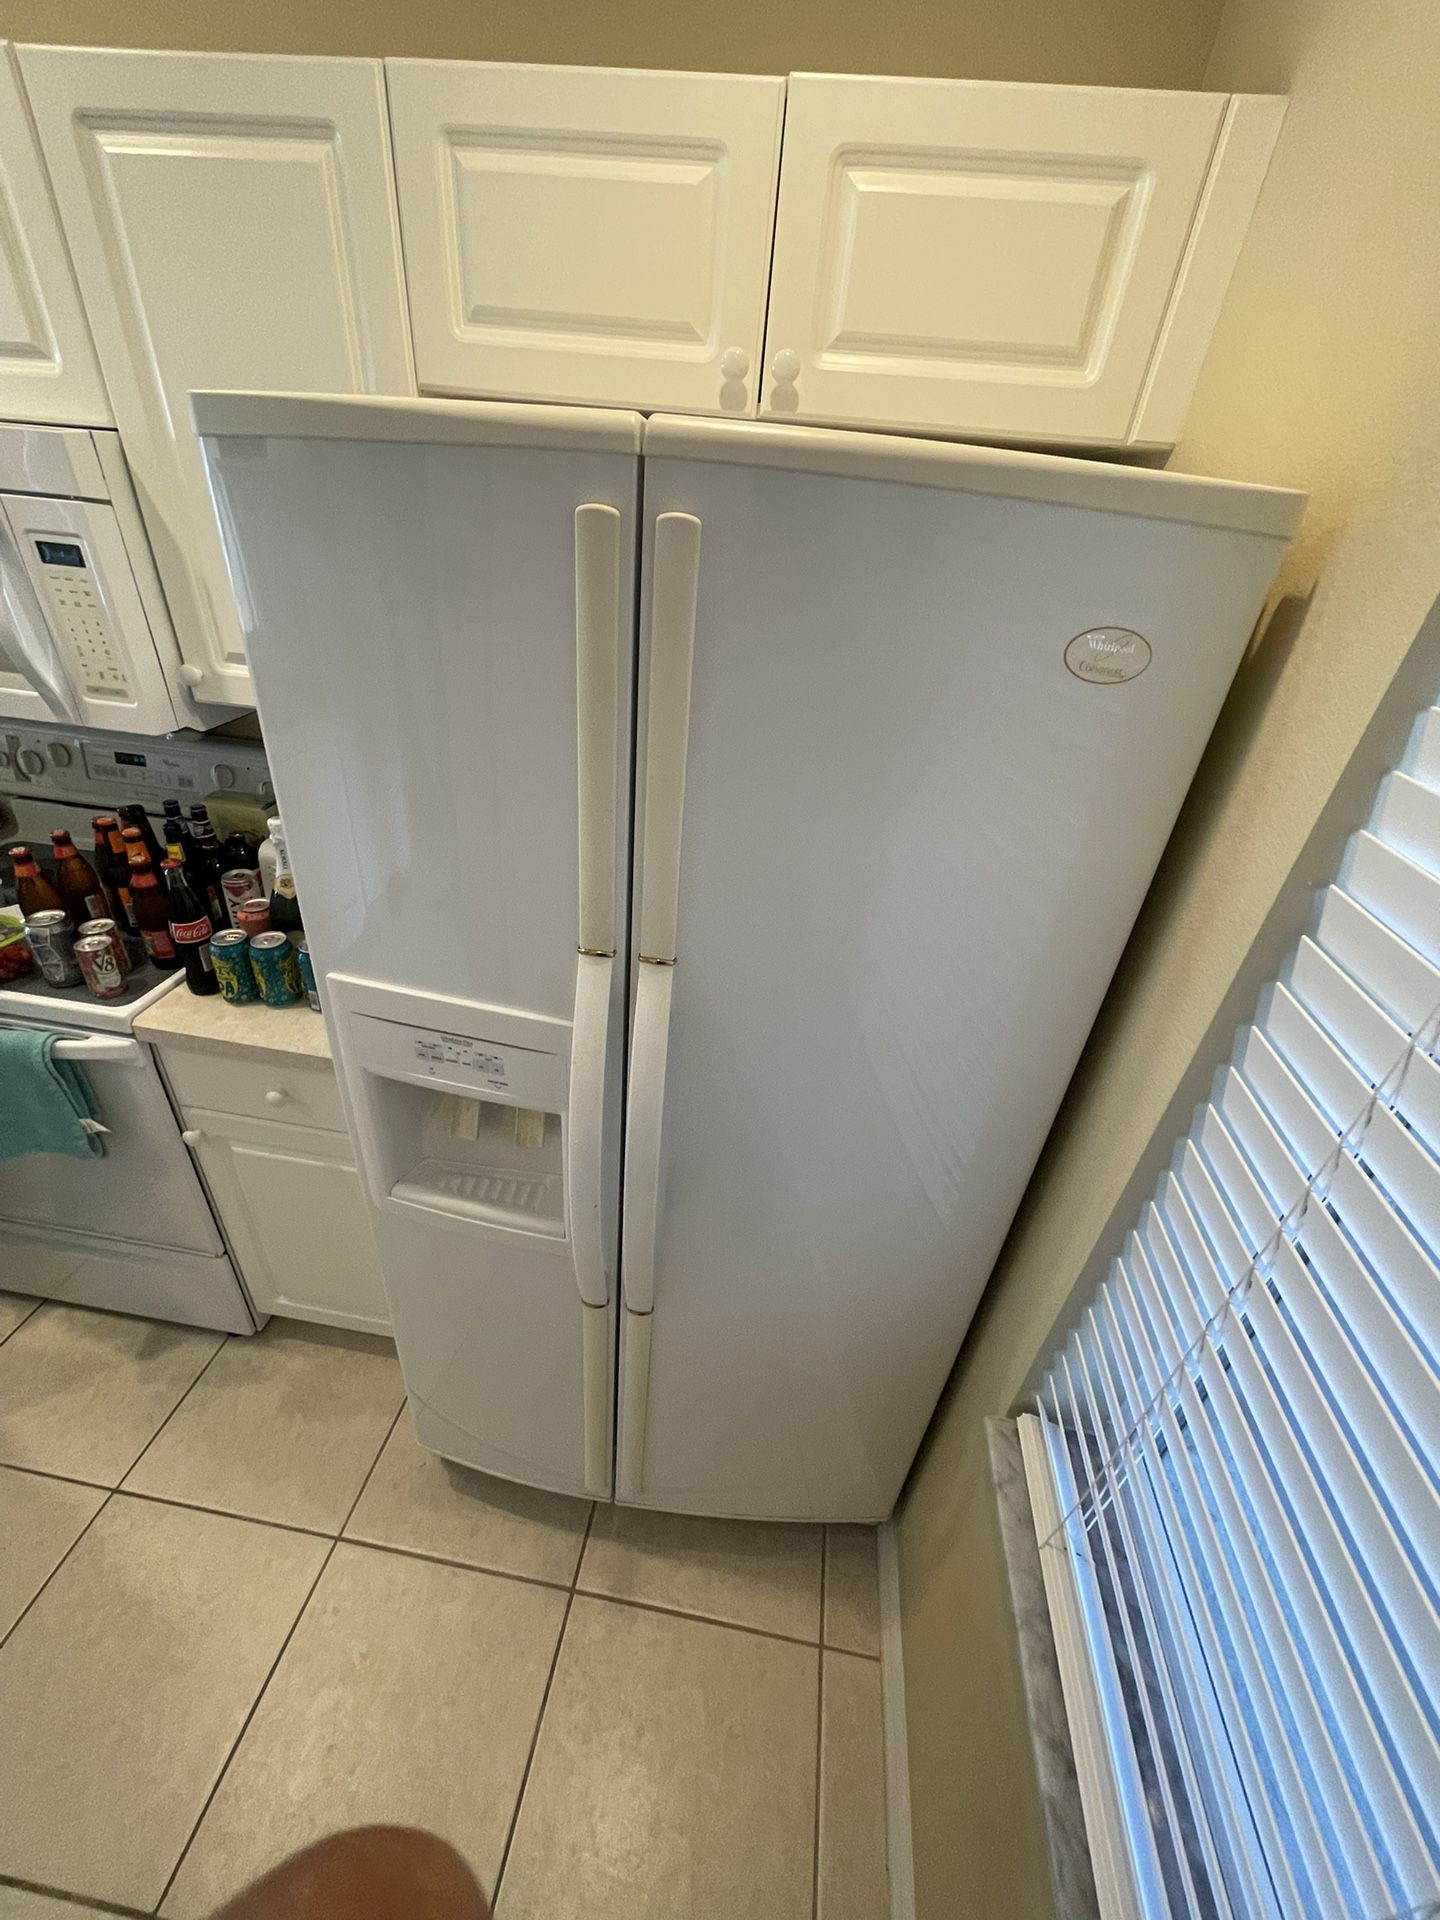 Nevera de dos puertas cocina de gas horno eléctrico wine Cooler microwave  todos los equipos en perfectas condiciones for Sale in Orlando, FL - OfferUp